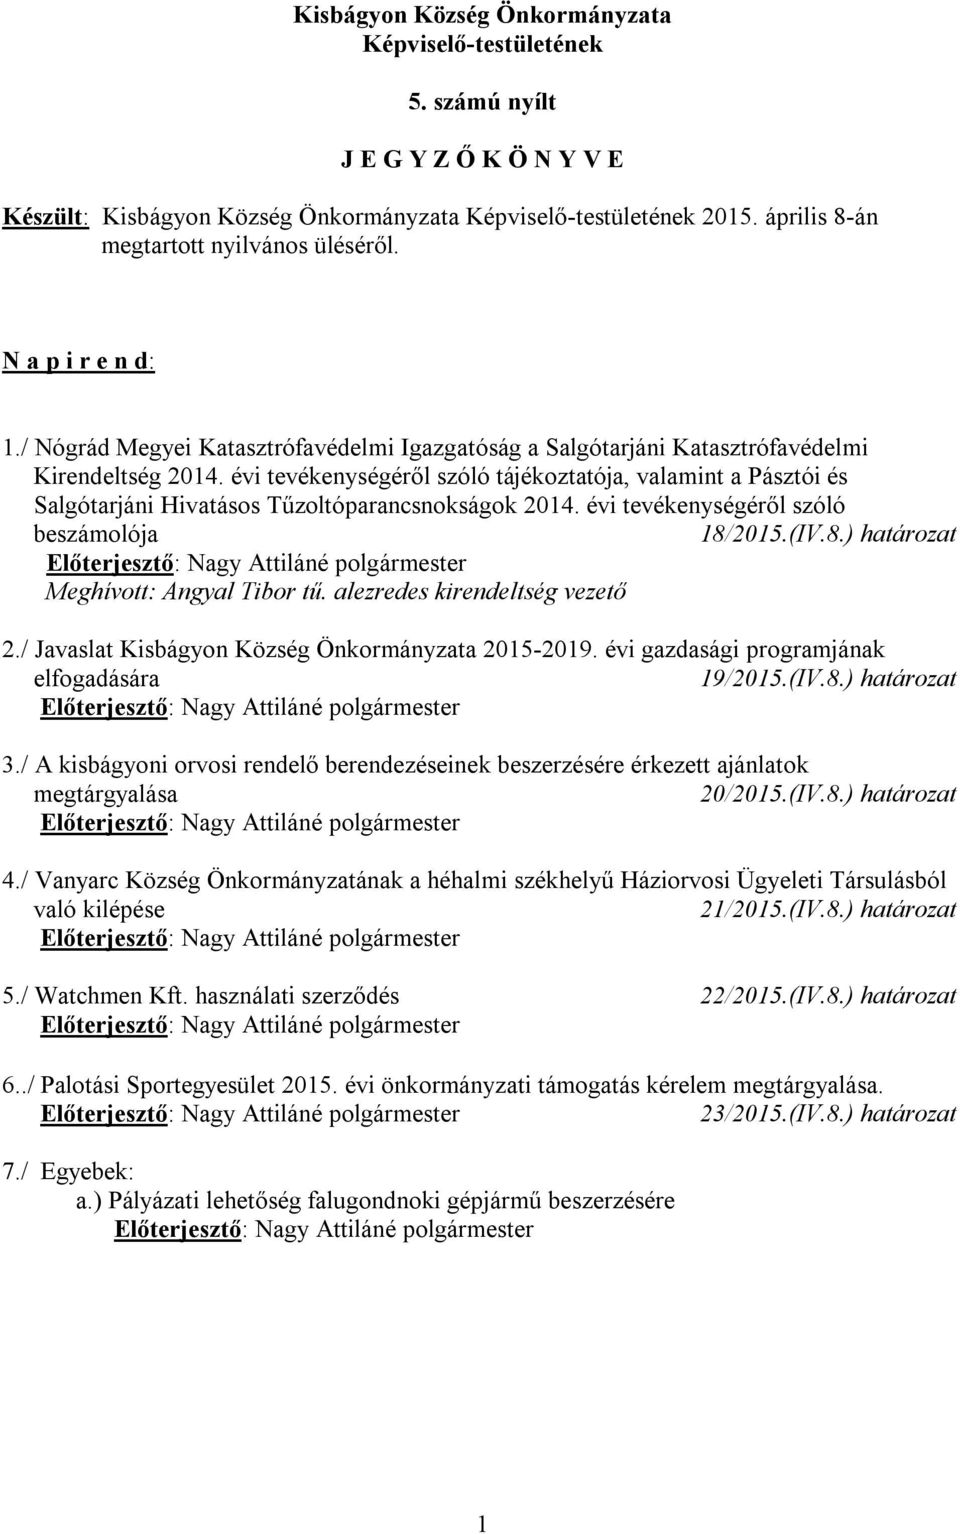 évi tevékenységéről szóló tájékoztatója, valamint a Pásztói és Salgótarjáni Hivatásos Tűzoltóparancsnokságok 2014. évi tevékenységéről szóló beszámolója 18/2015.(IV.8.) határozat Meghívott: Angyal Tibor tű.